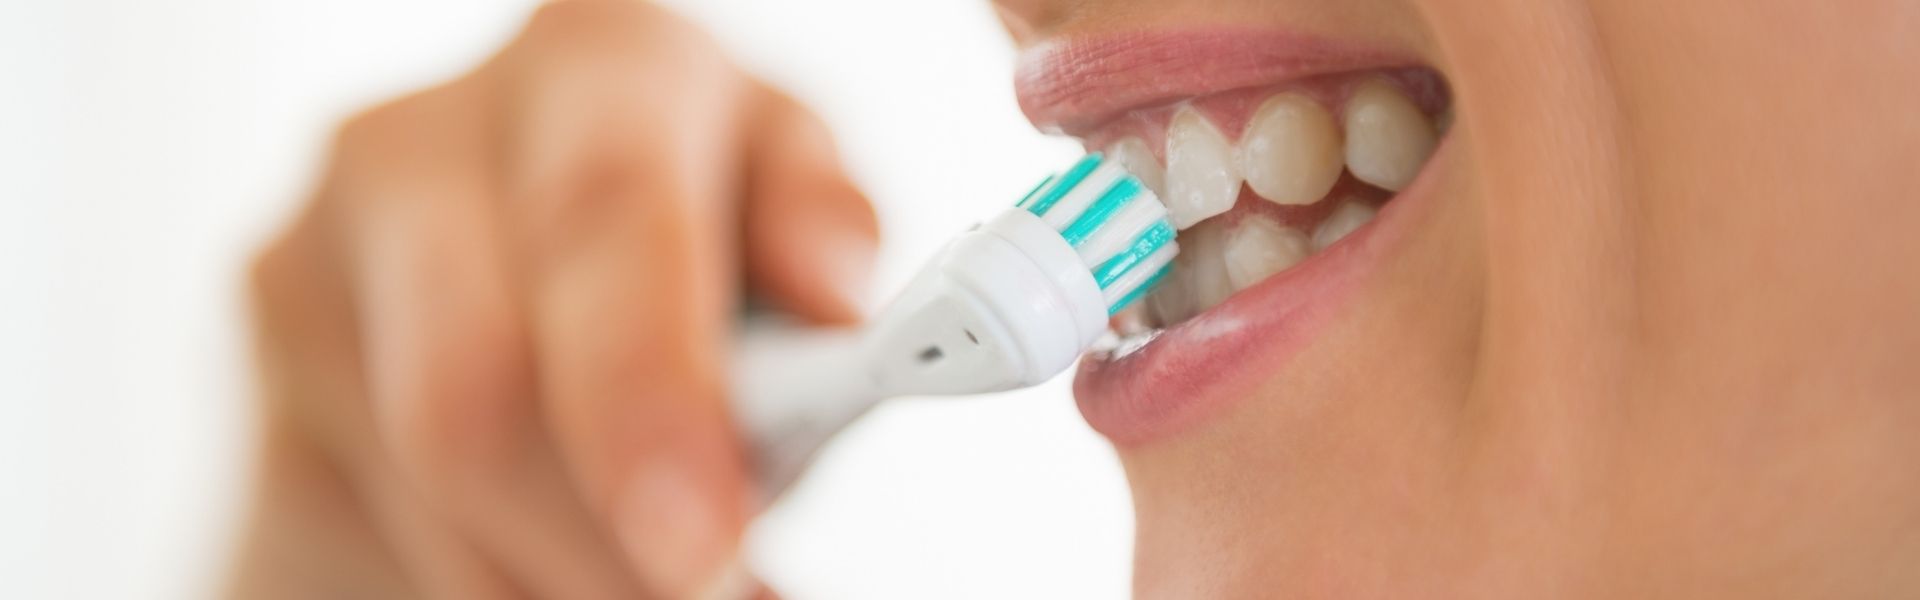 Bàn chải điện Electric Toothbrush phục vụ hàm răng của bạn